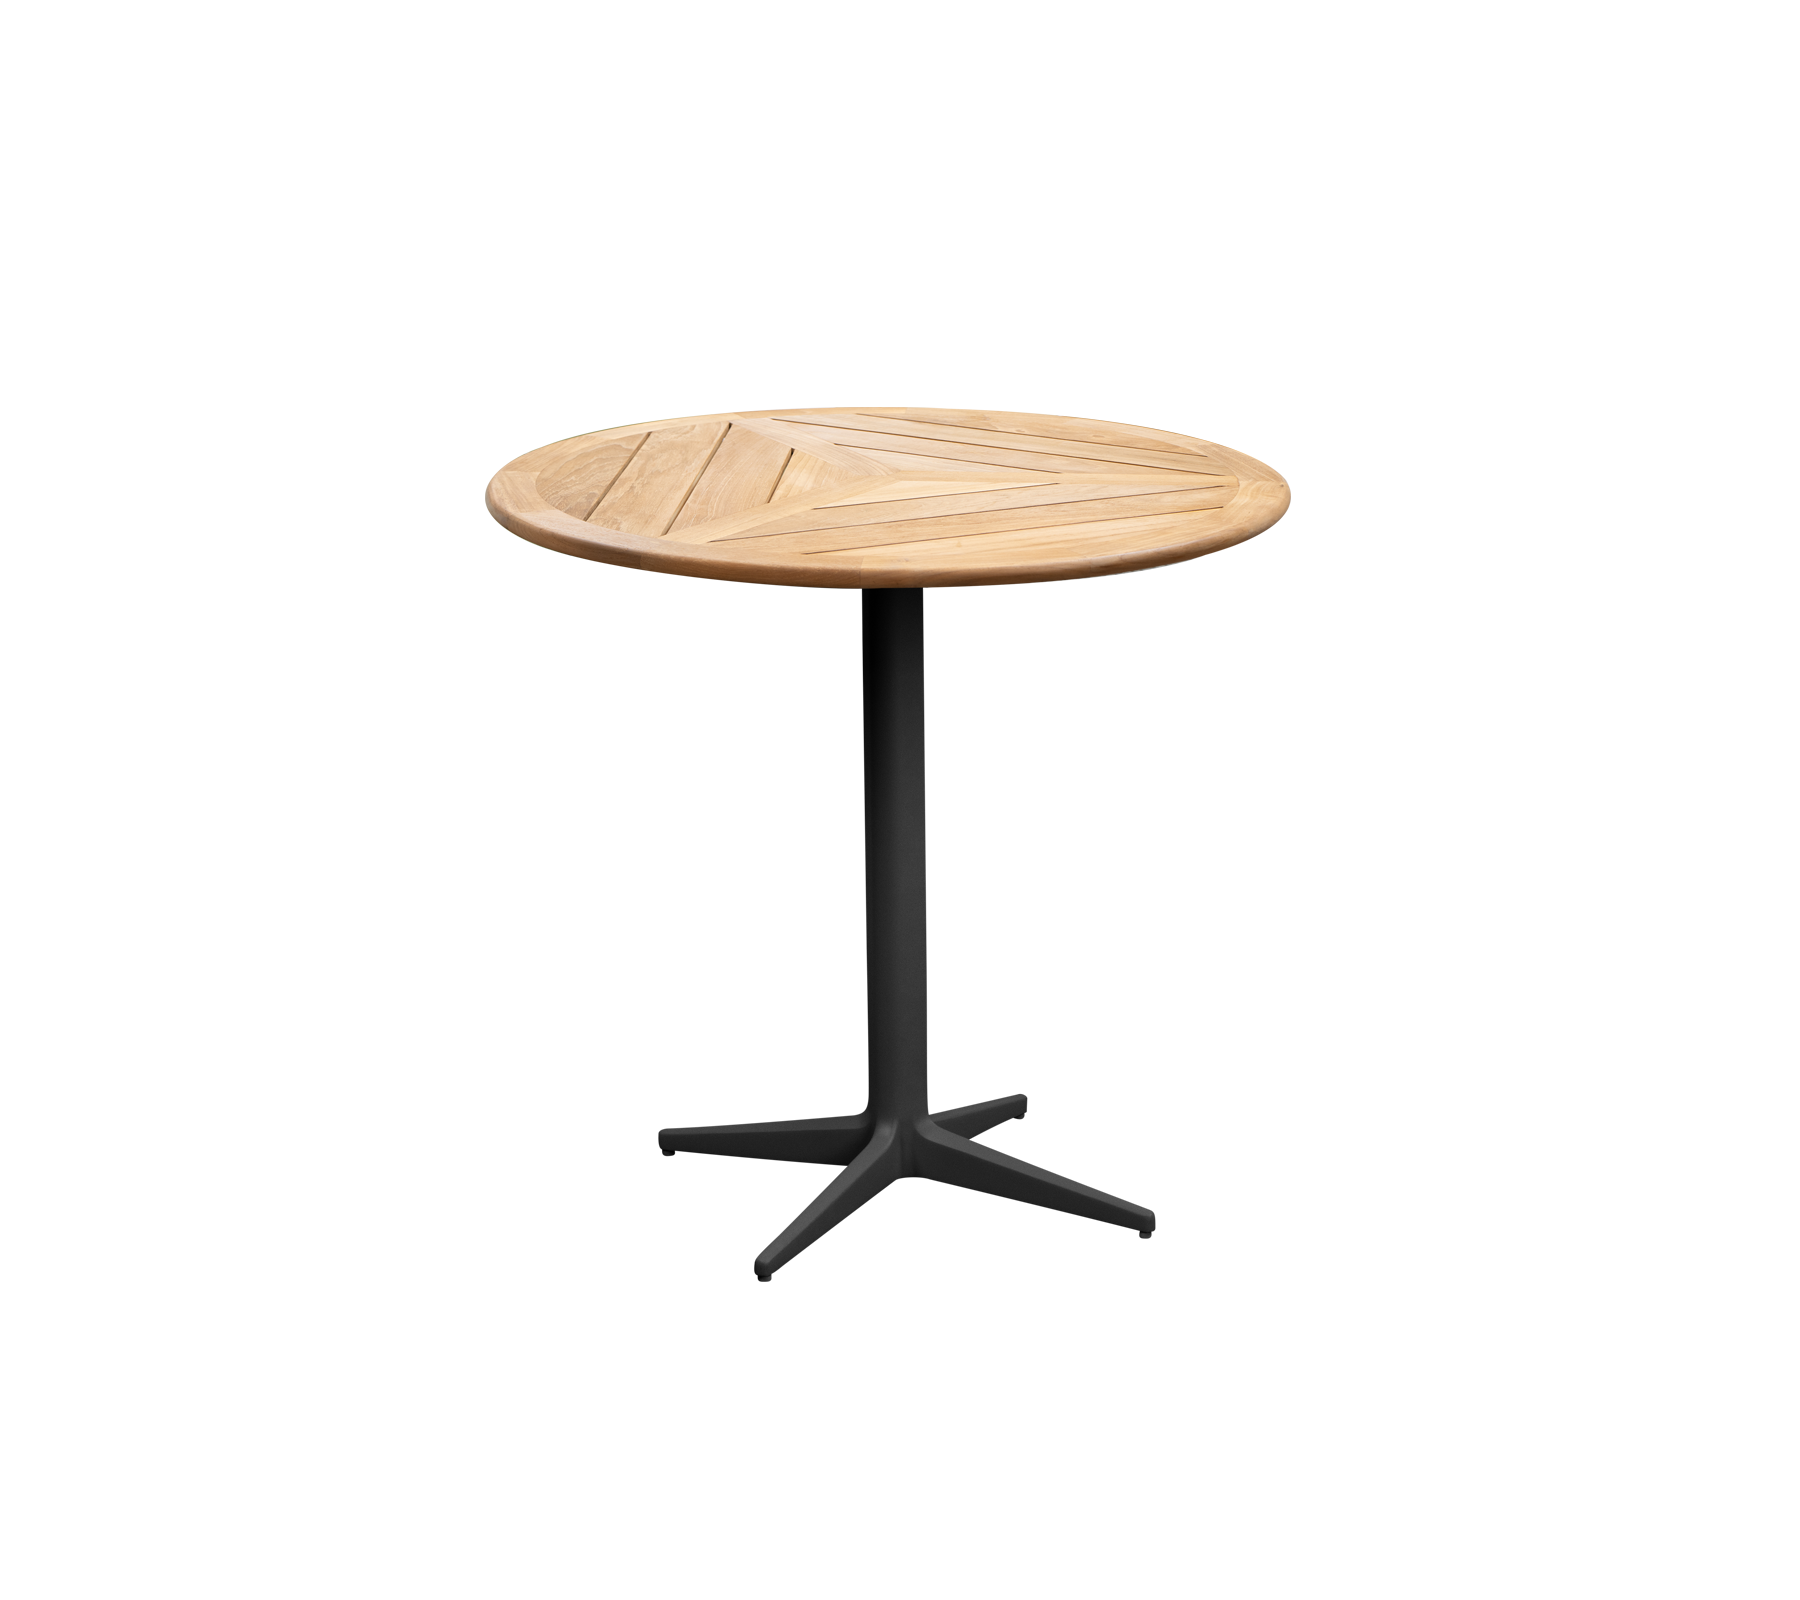 Drop table diam. 60 cm